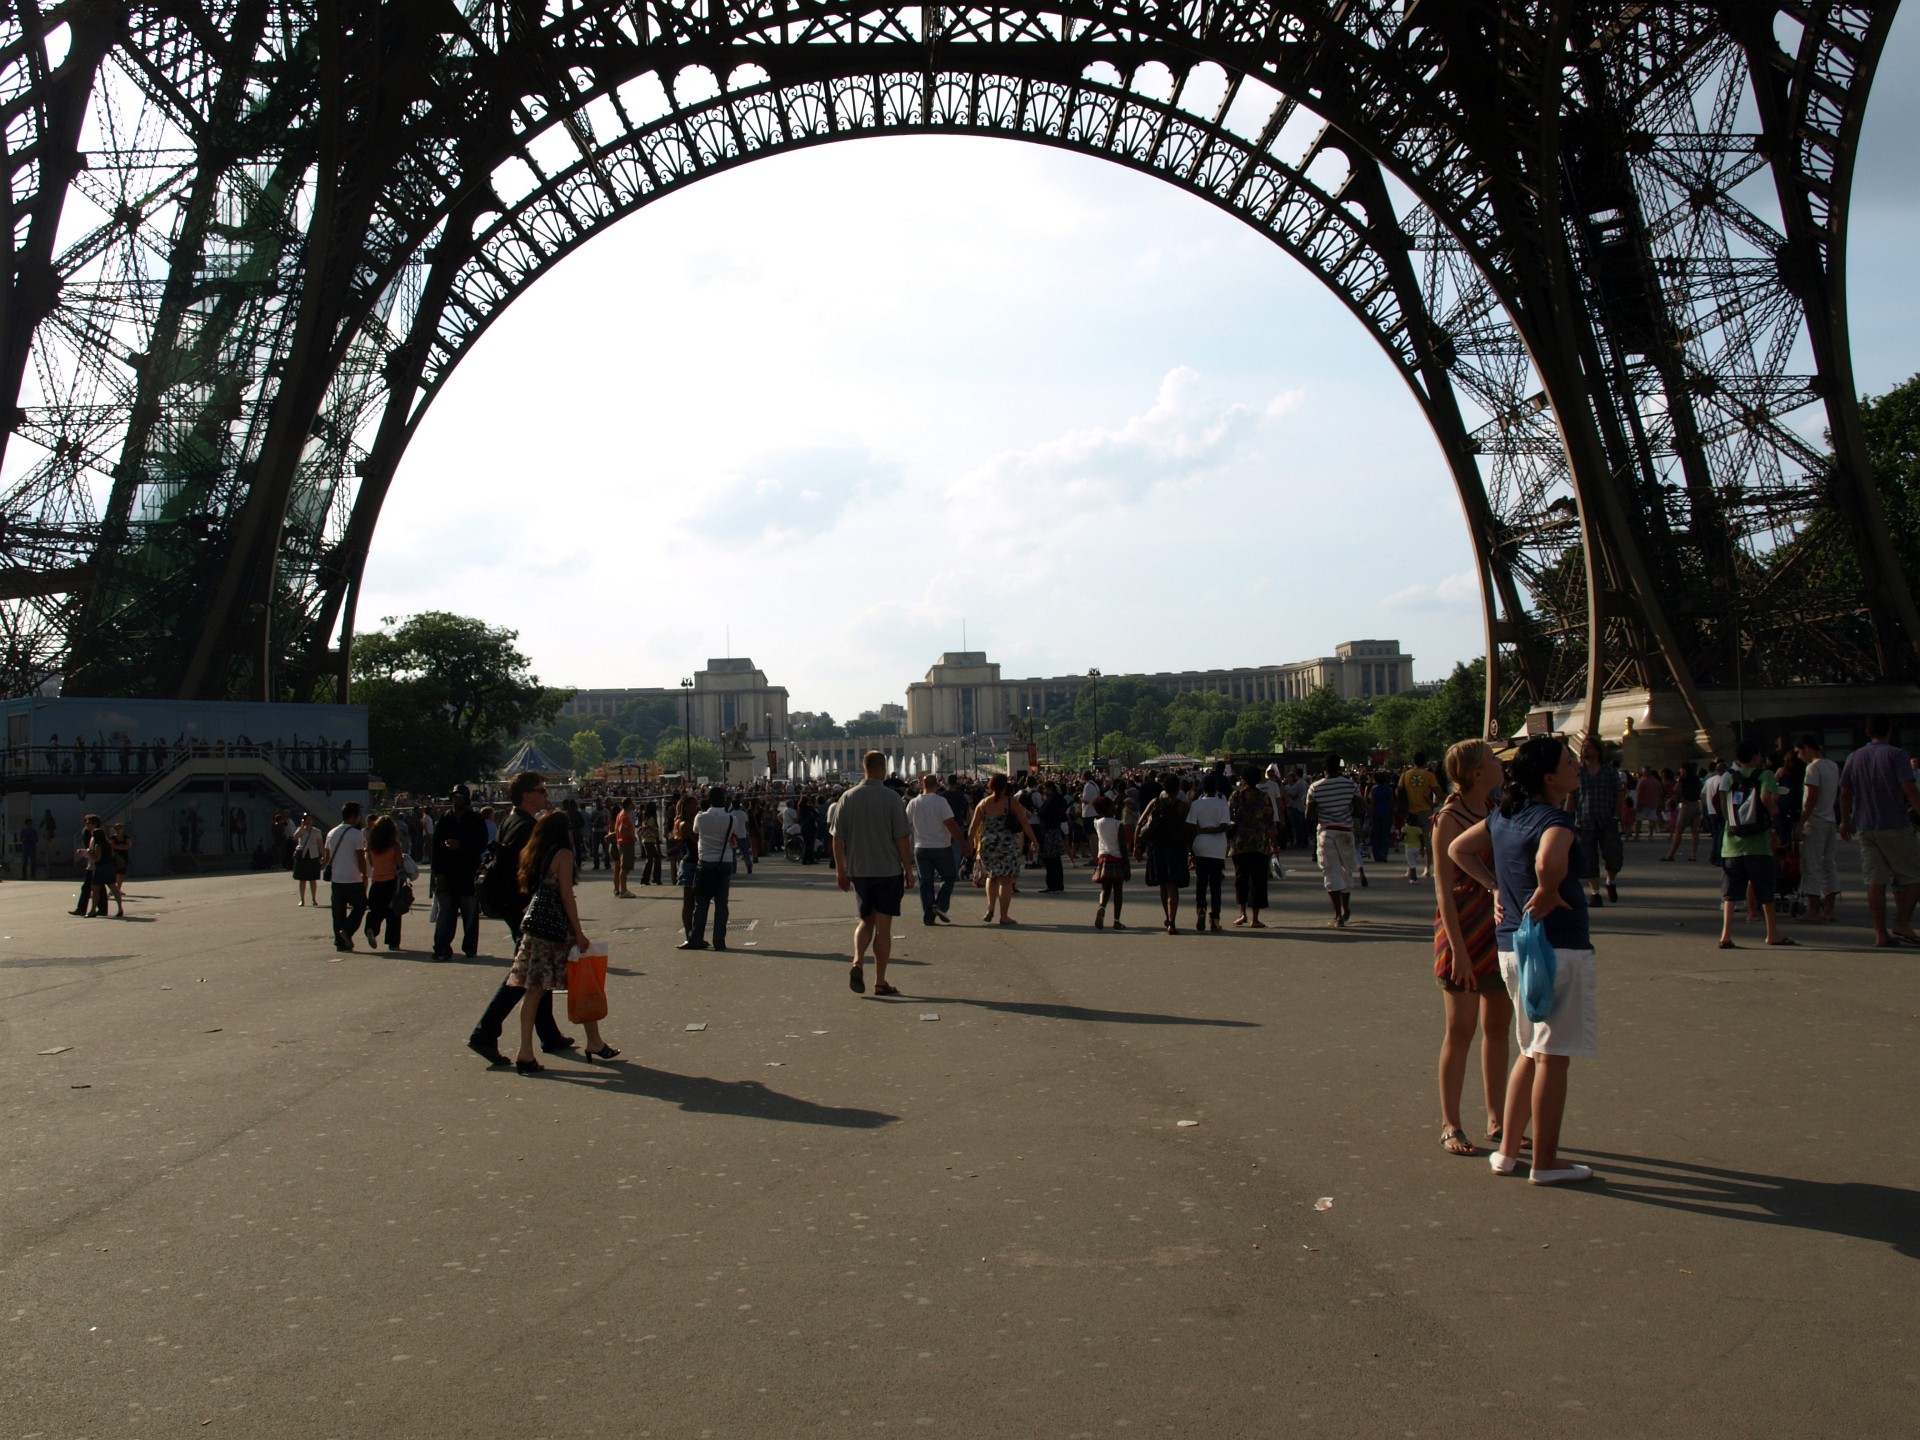 Crowds Celebrating Michael Jackson's Life Under the Tour Eiffel